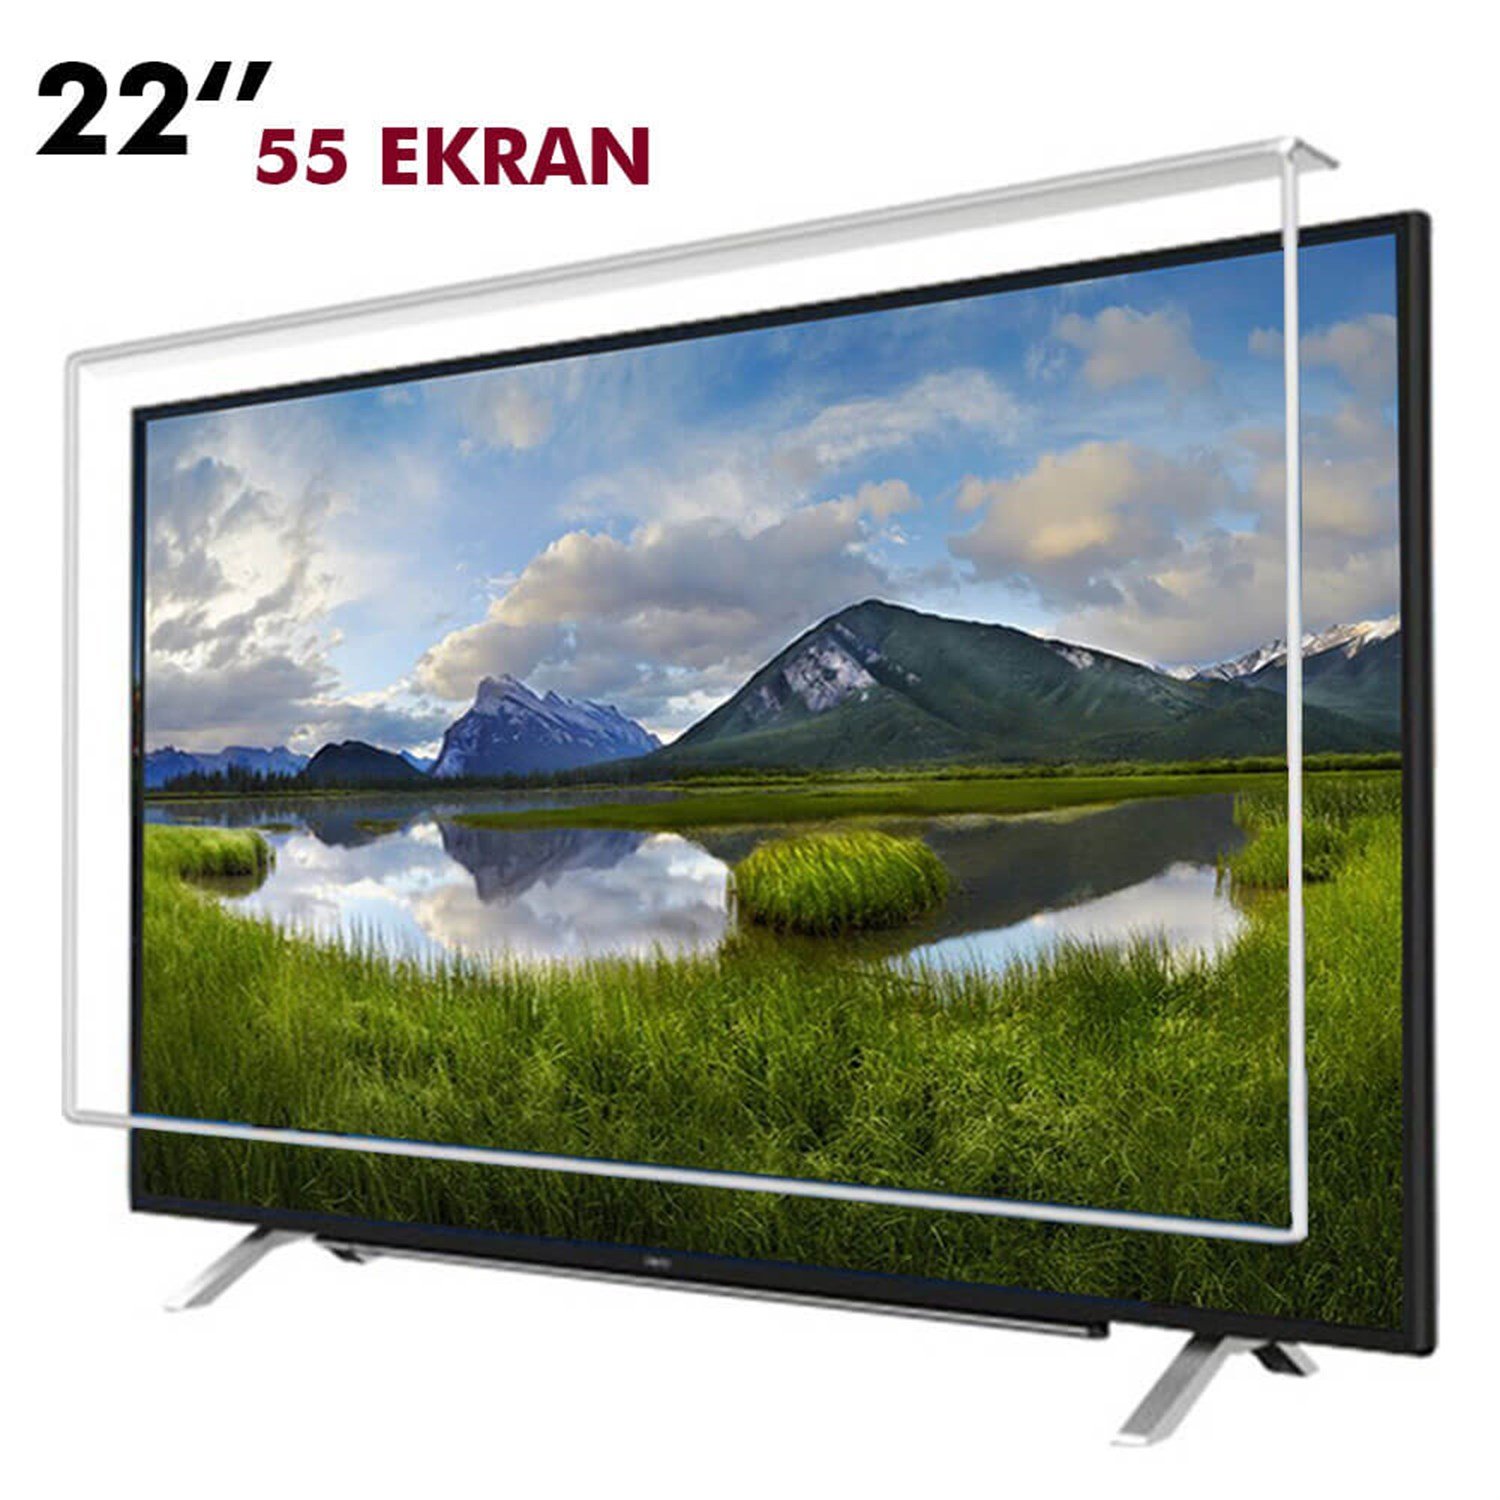 Tv Ekran Koruyucu 55 Ekran(22” inch) | Okularenkkat.com